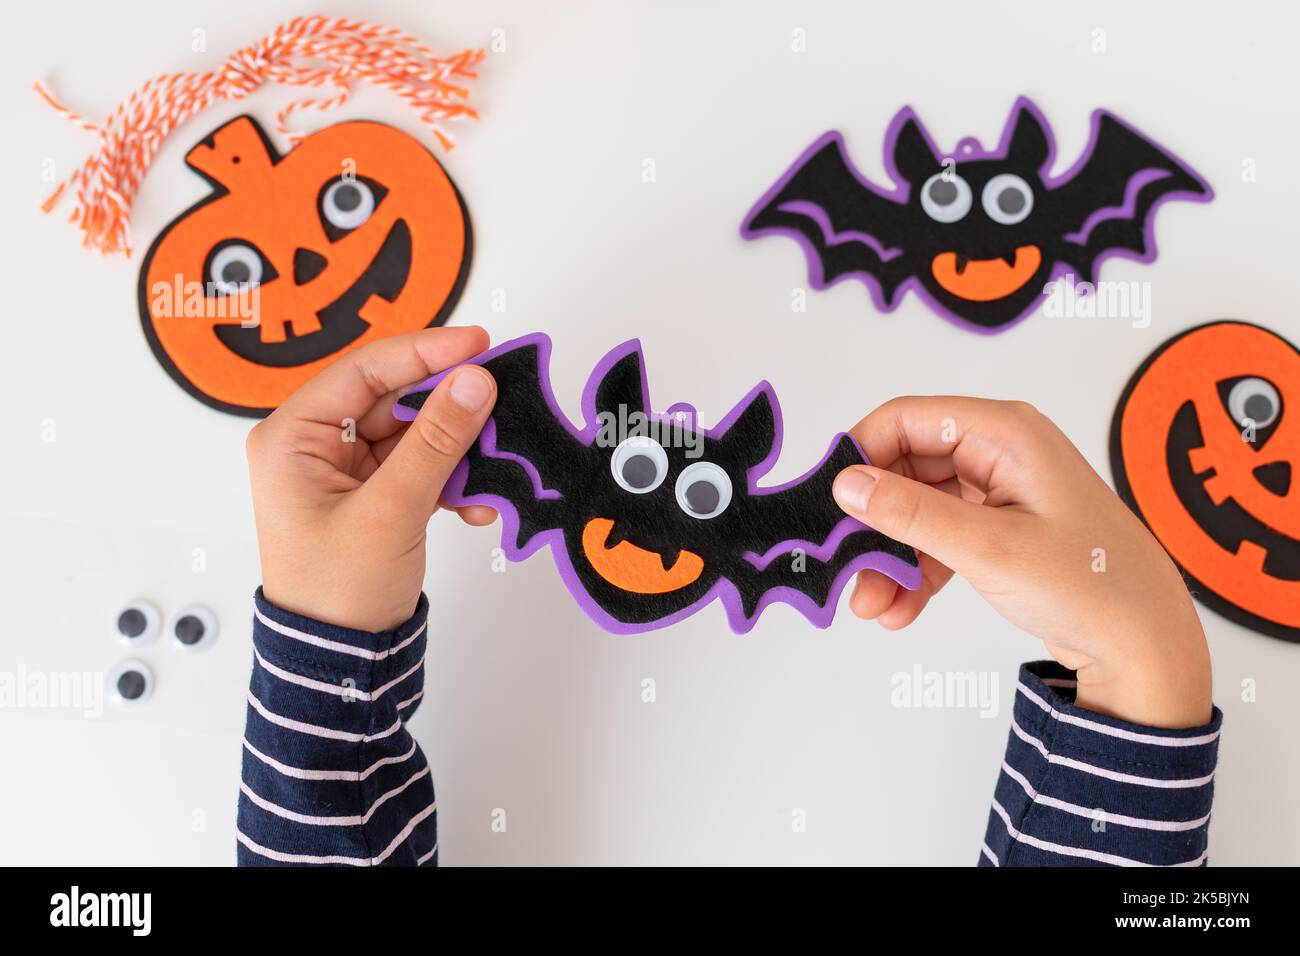 les enfants tiennent des décorations de chauve-souris d'halloween avec un visage effrayant Banque D'Images